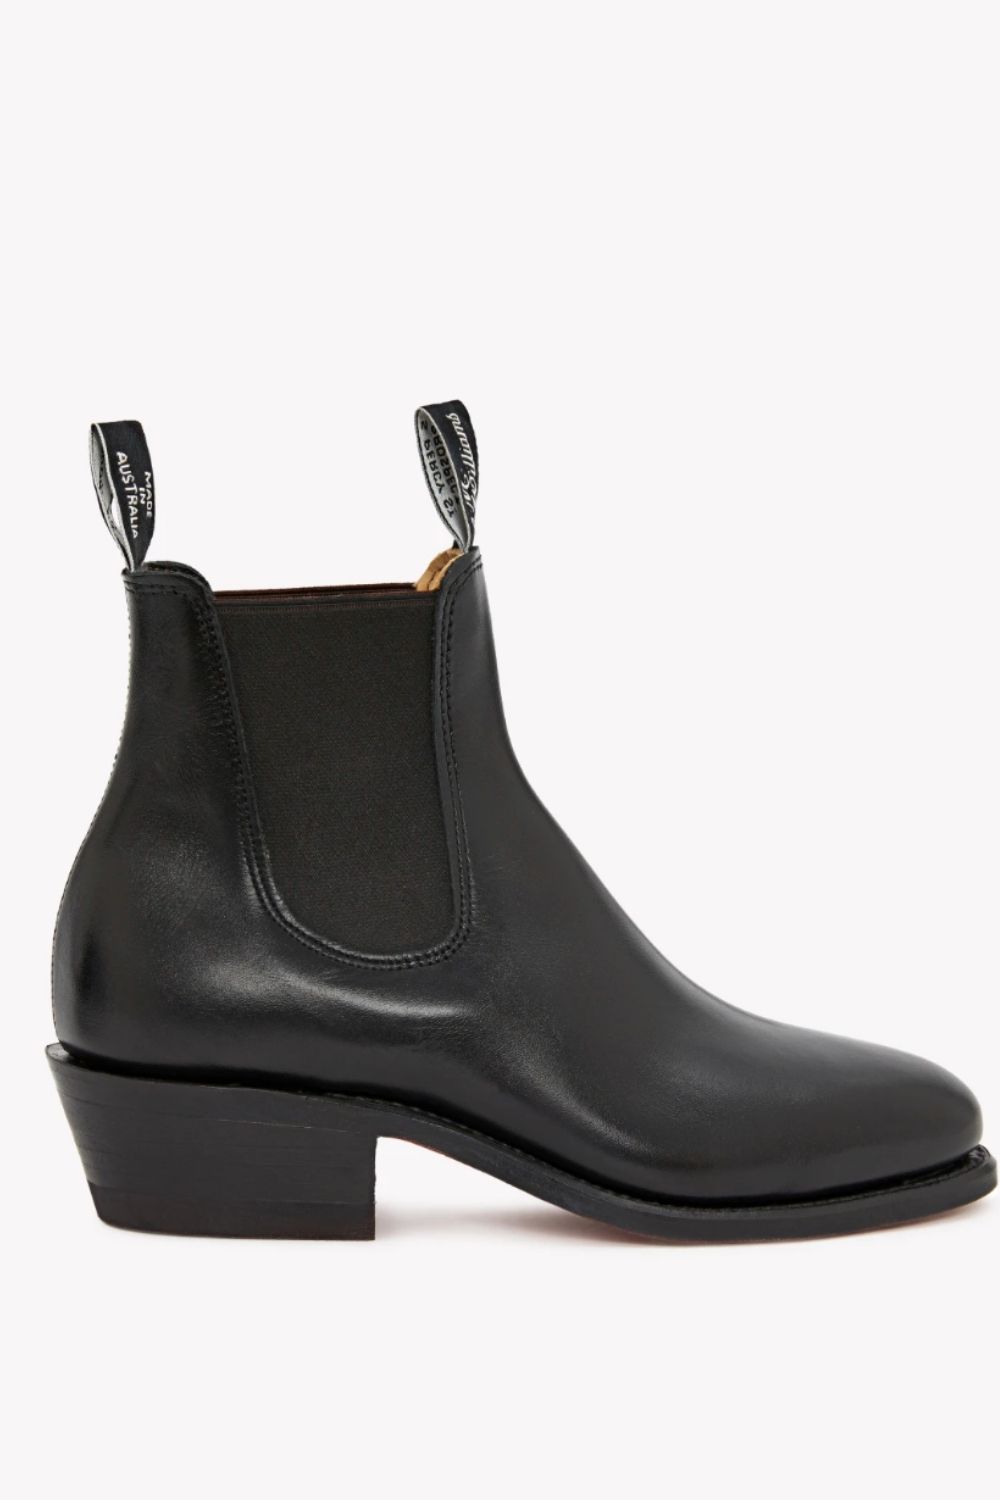 affordable-designer-boots